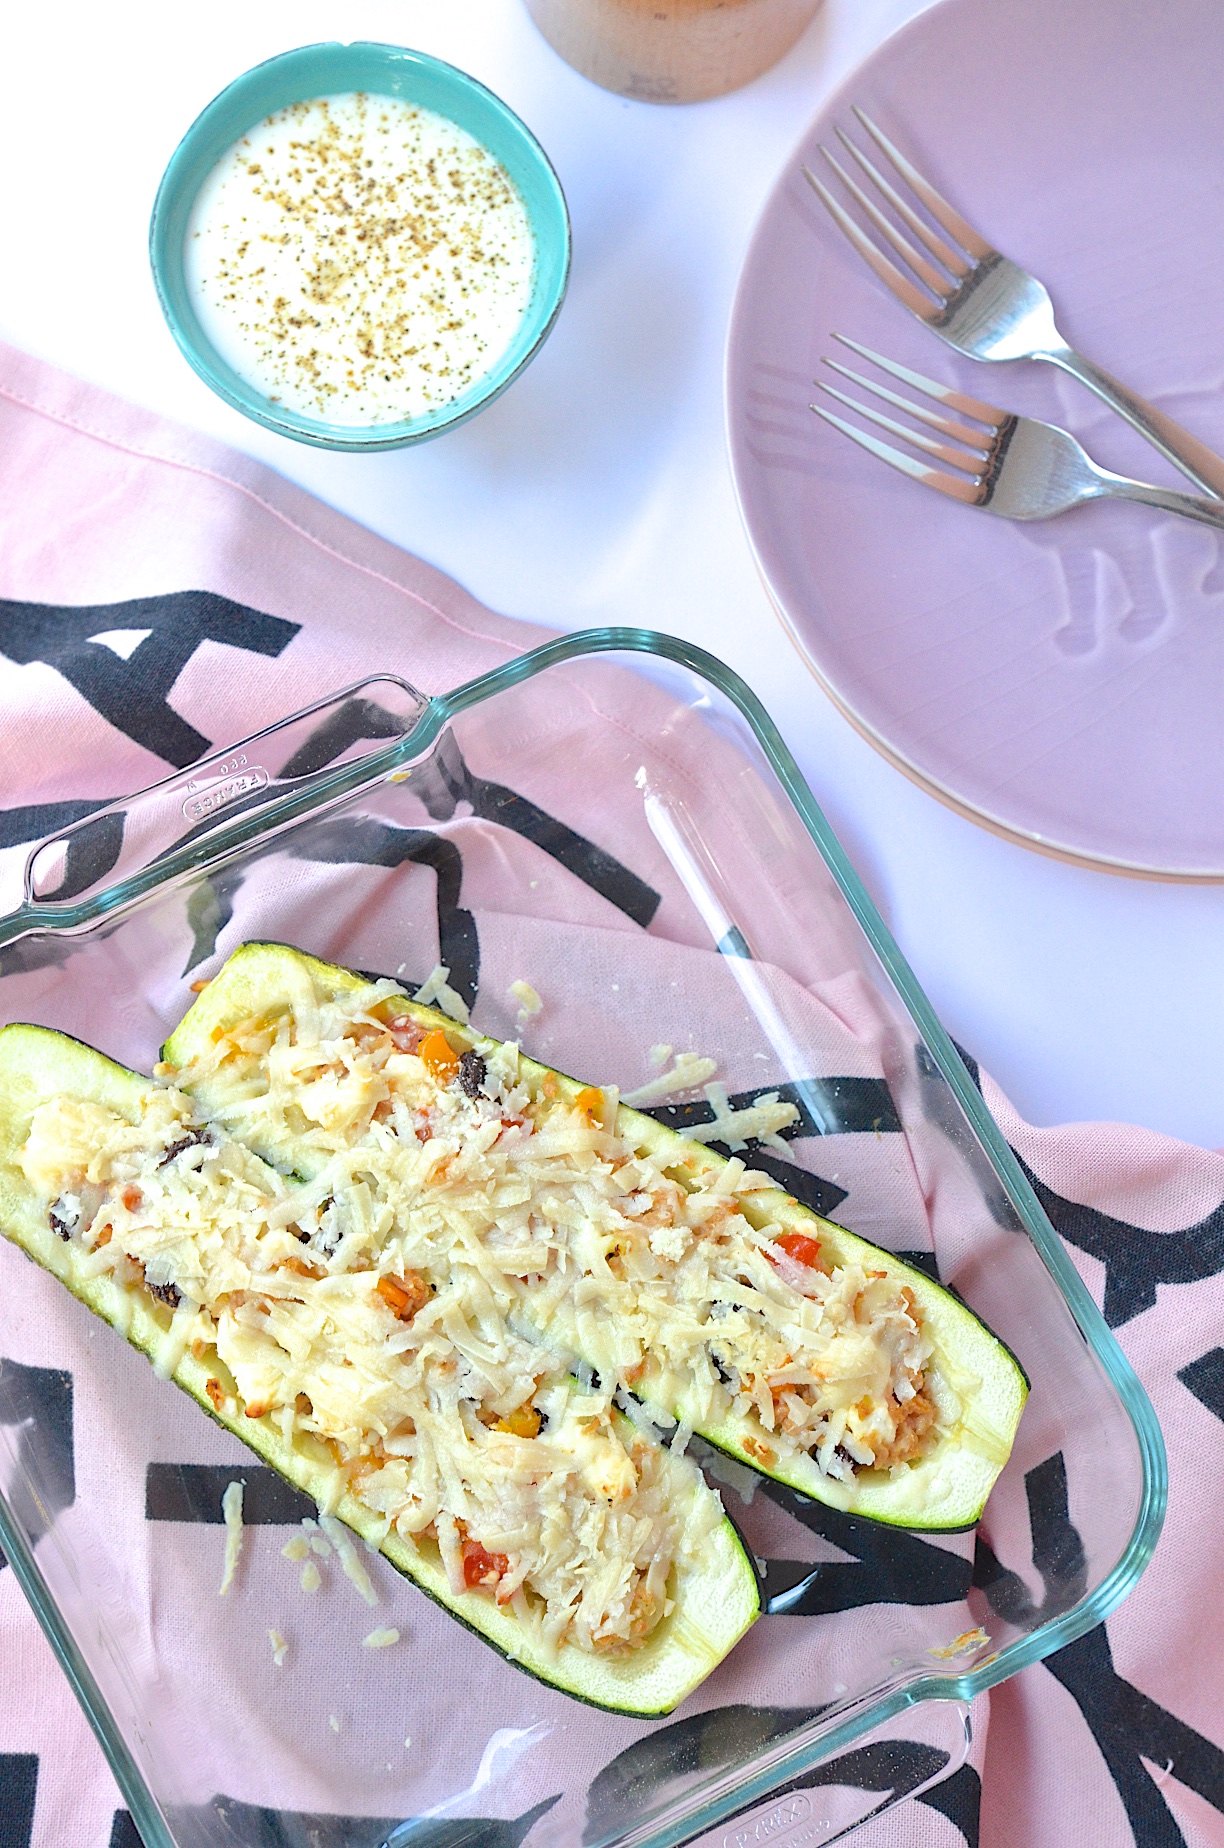 Vegetarisch gefüllte Zucchini mit Rosinen und Feta. Kochen mit Resten | Pinkepank